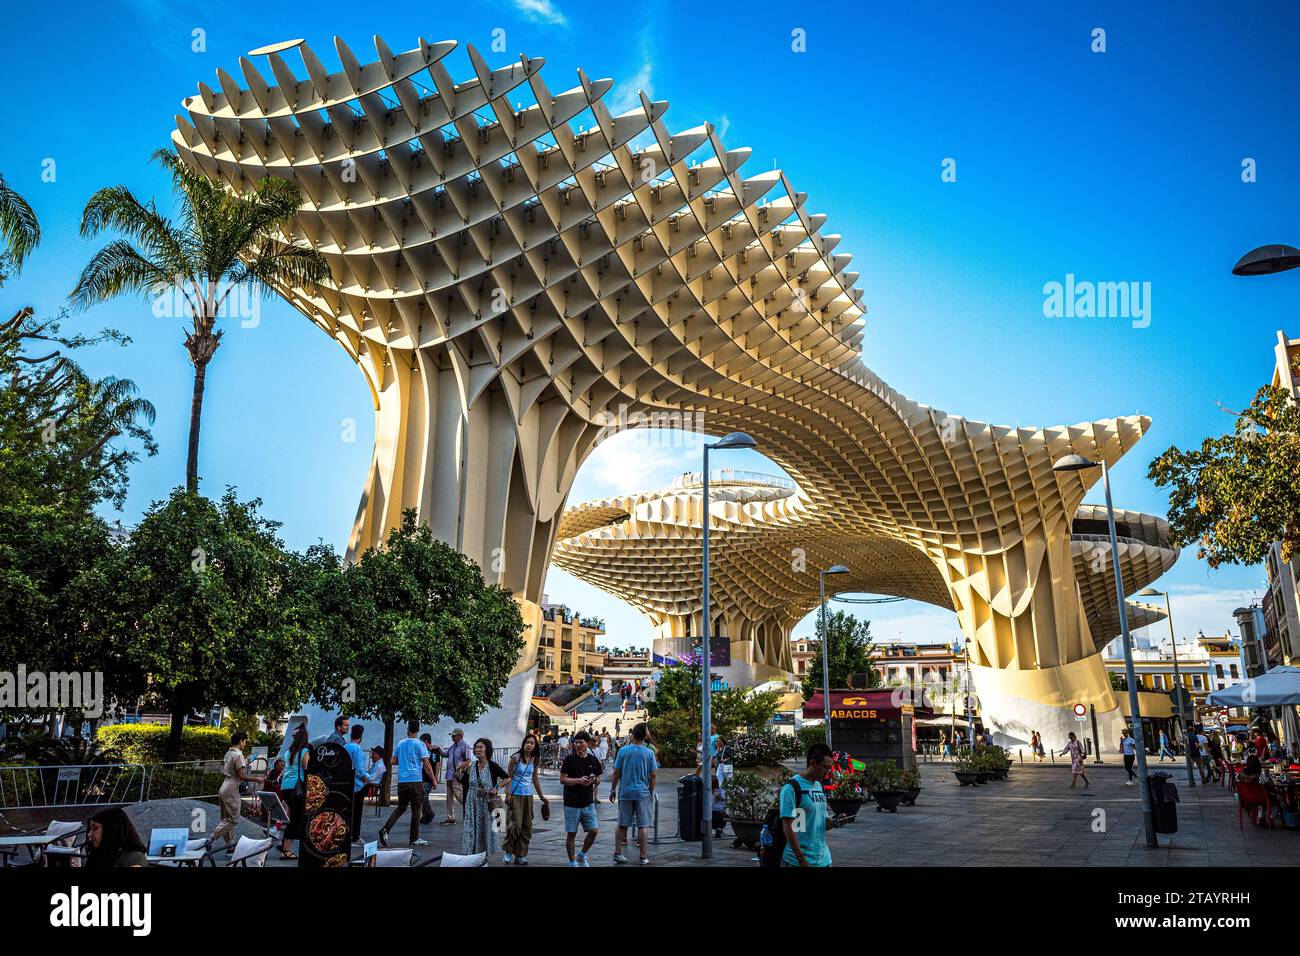 Metropol Parasol pérgola de madera llamado Setas de Sevilla Spain Stock Photo